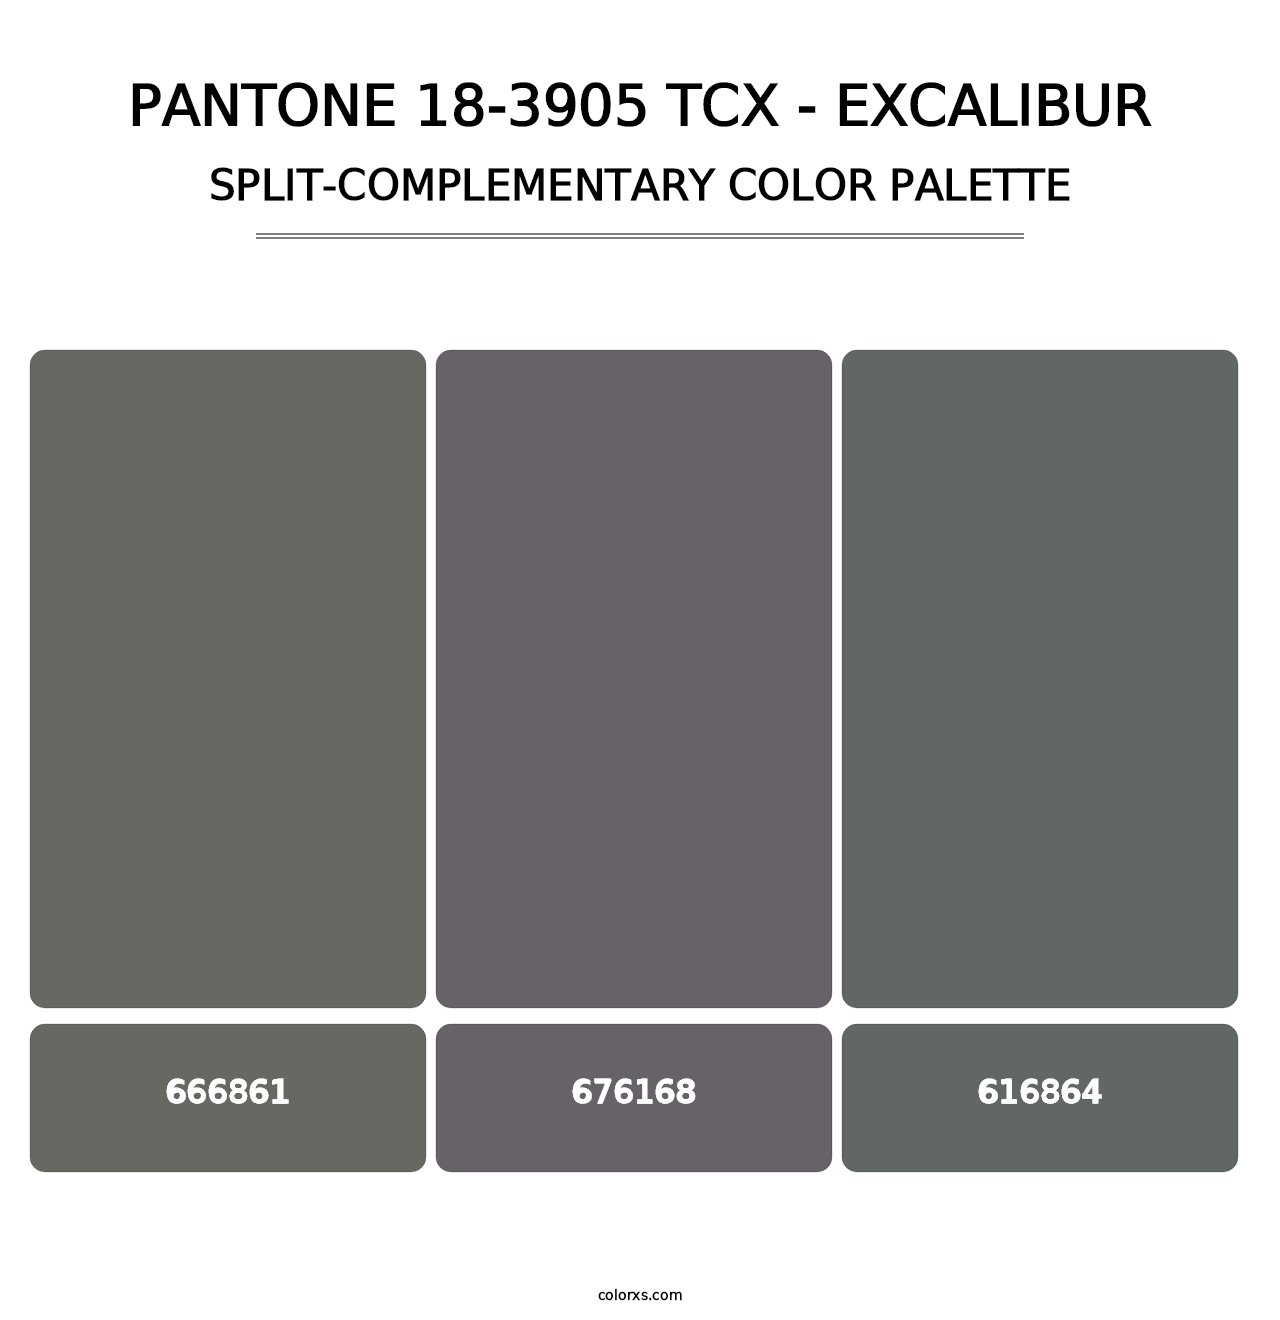 PANTONE 18-3905 TCX - Excalibur - Split-Complementary Color Palette